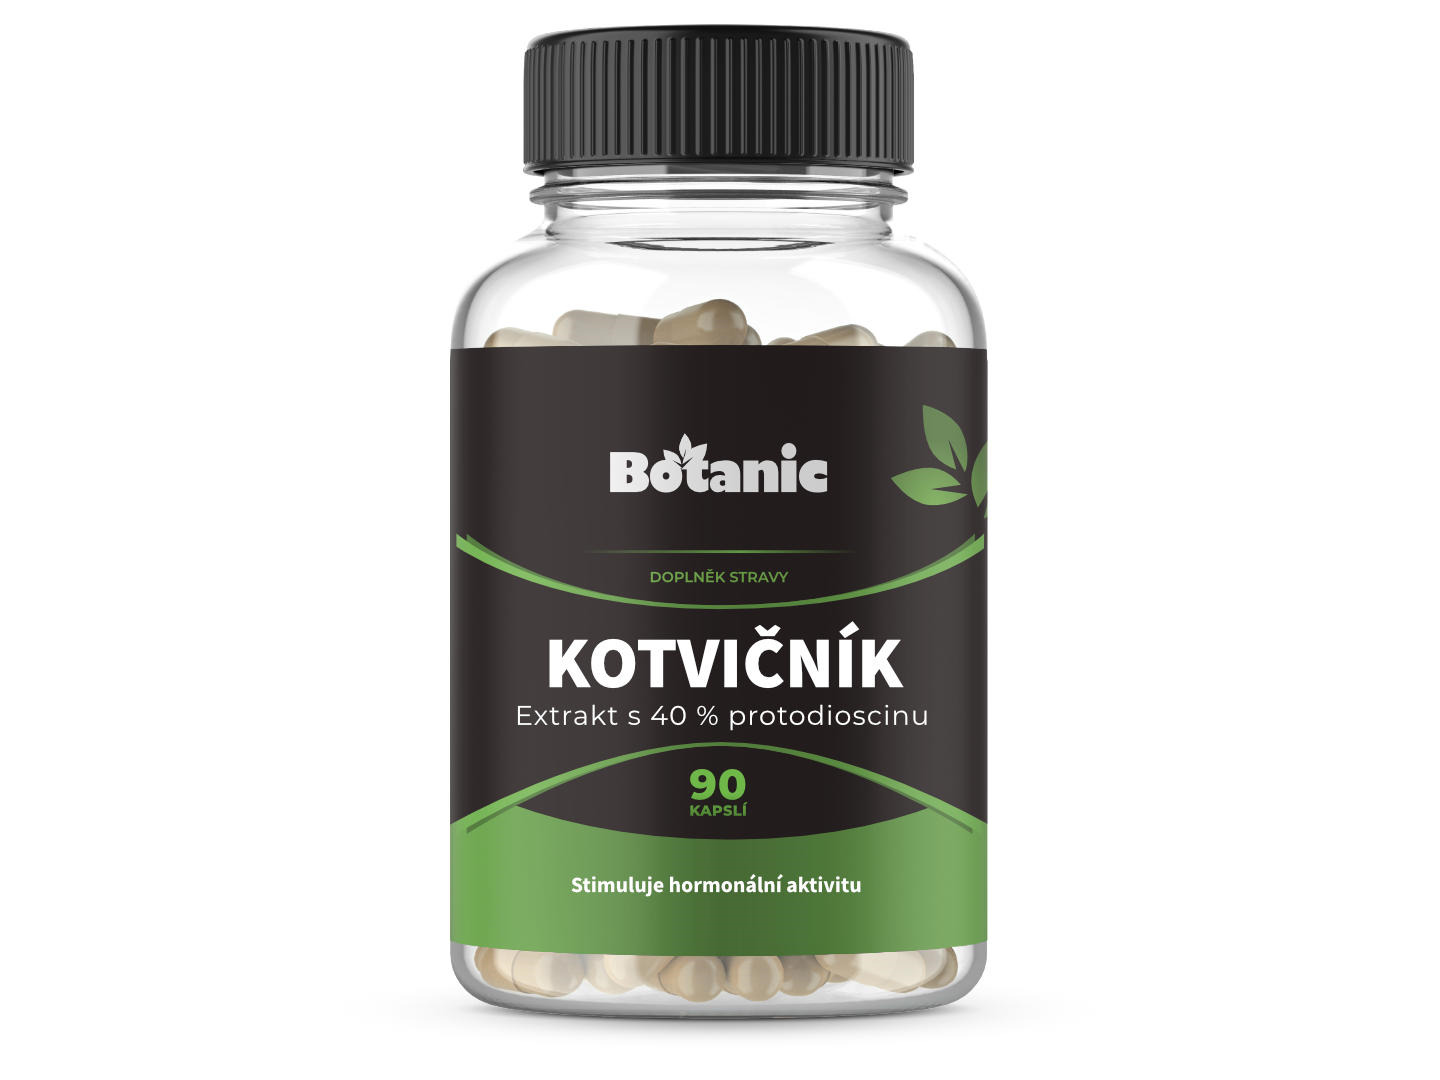 Botanic Kotvičník (Tribulus) - Extrakt 40 % protodioscinů v kapslích LIMITOVANÁ EDICE 90kap.